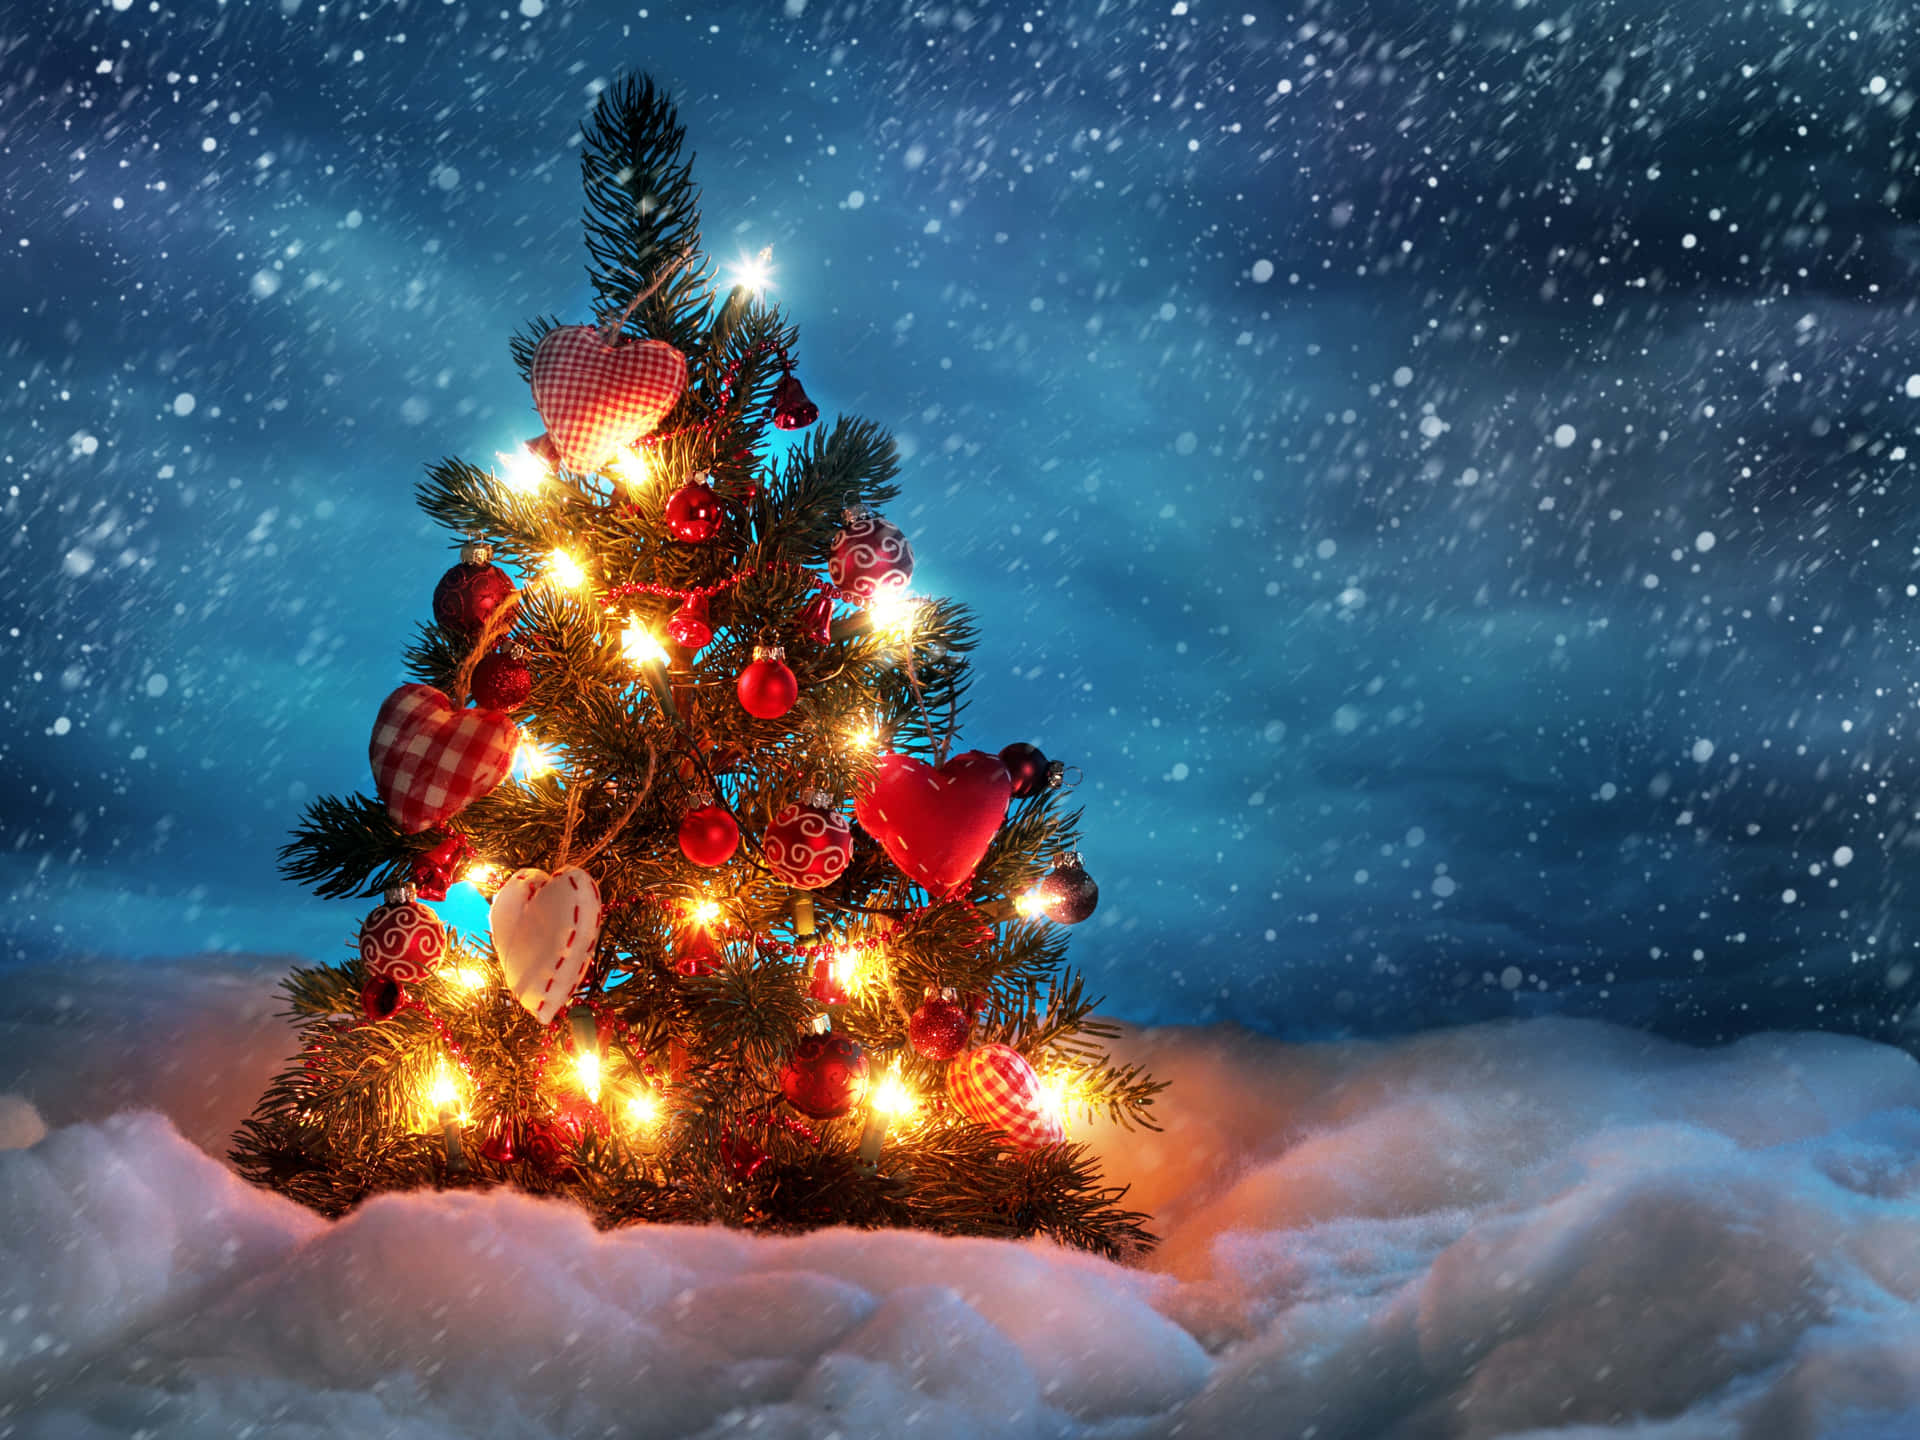 Einweihnachtsbaum Im Schnee Mit Lichtern Darauf. Wallpaper